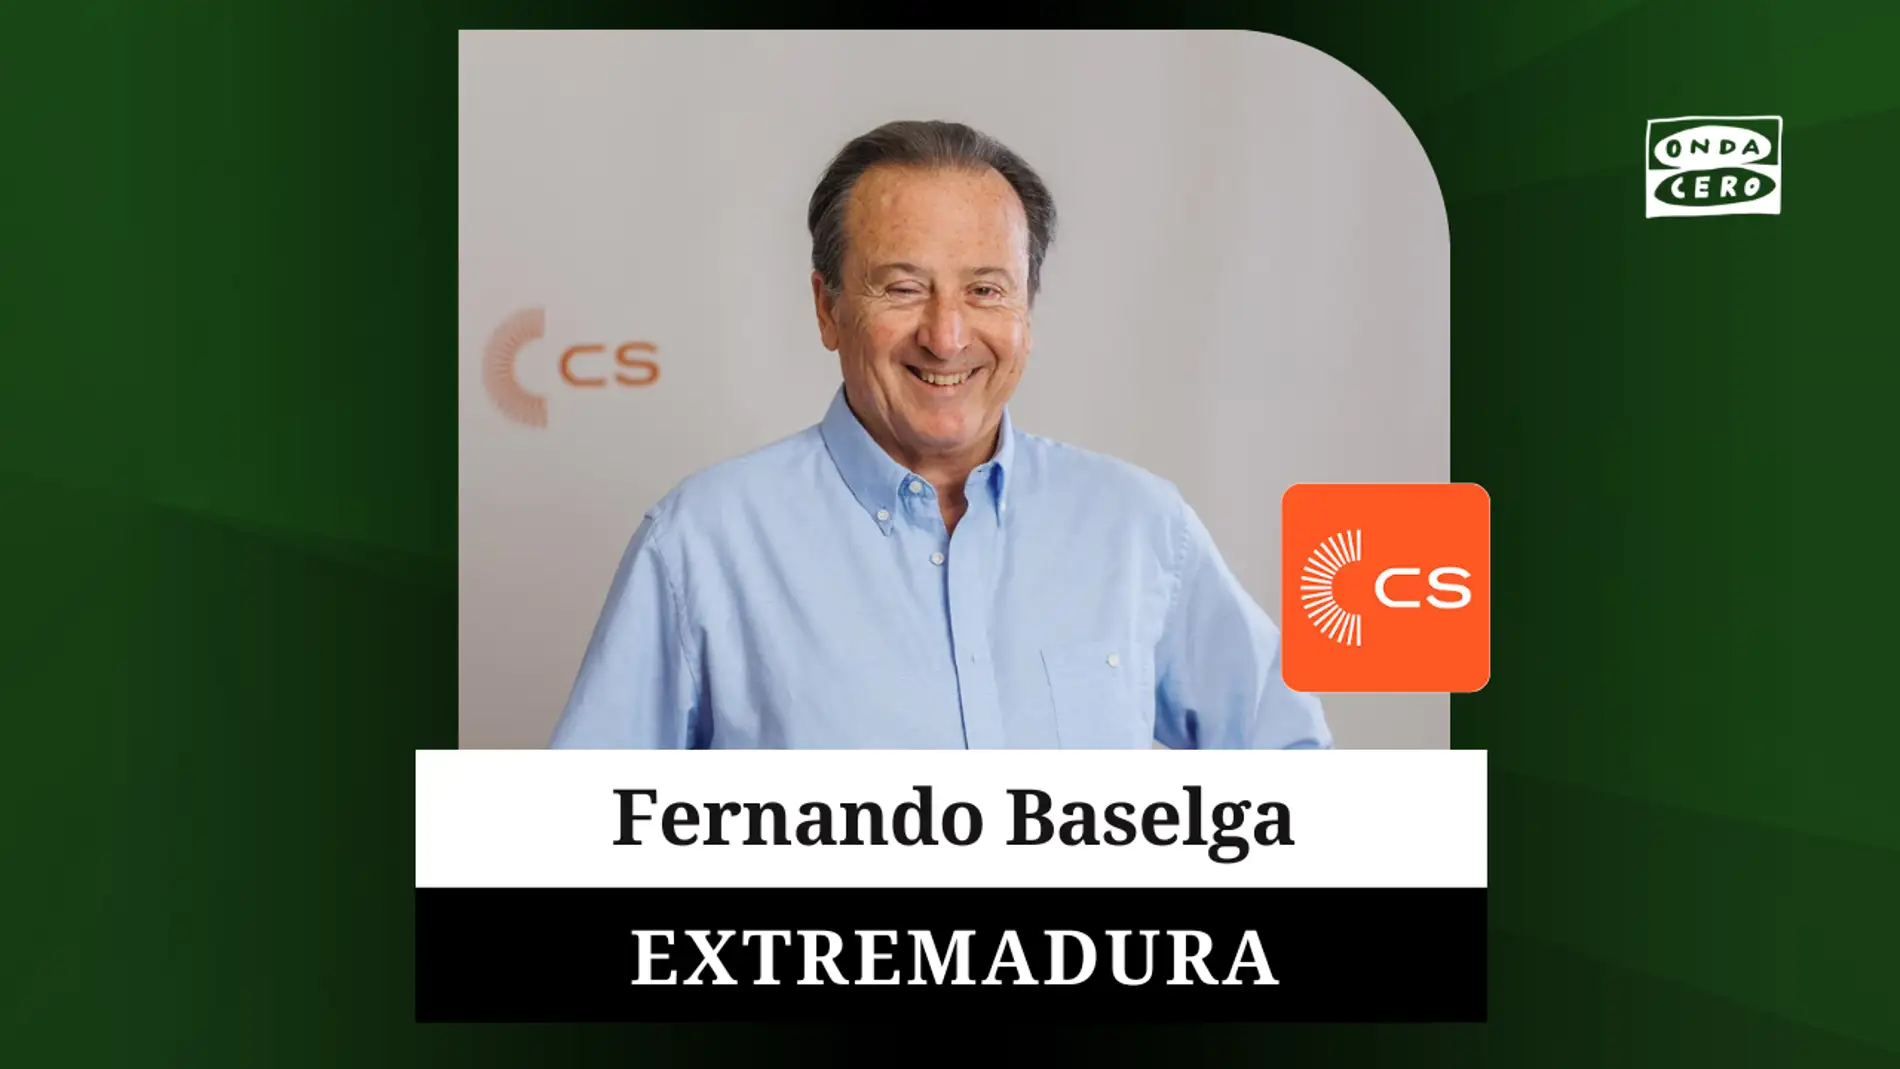 Fernando Baselga candidato de Ciudadanos a la presidencia de la Junta de Extremadura